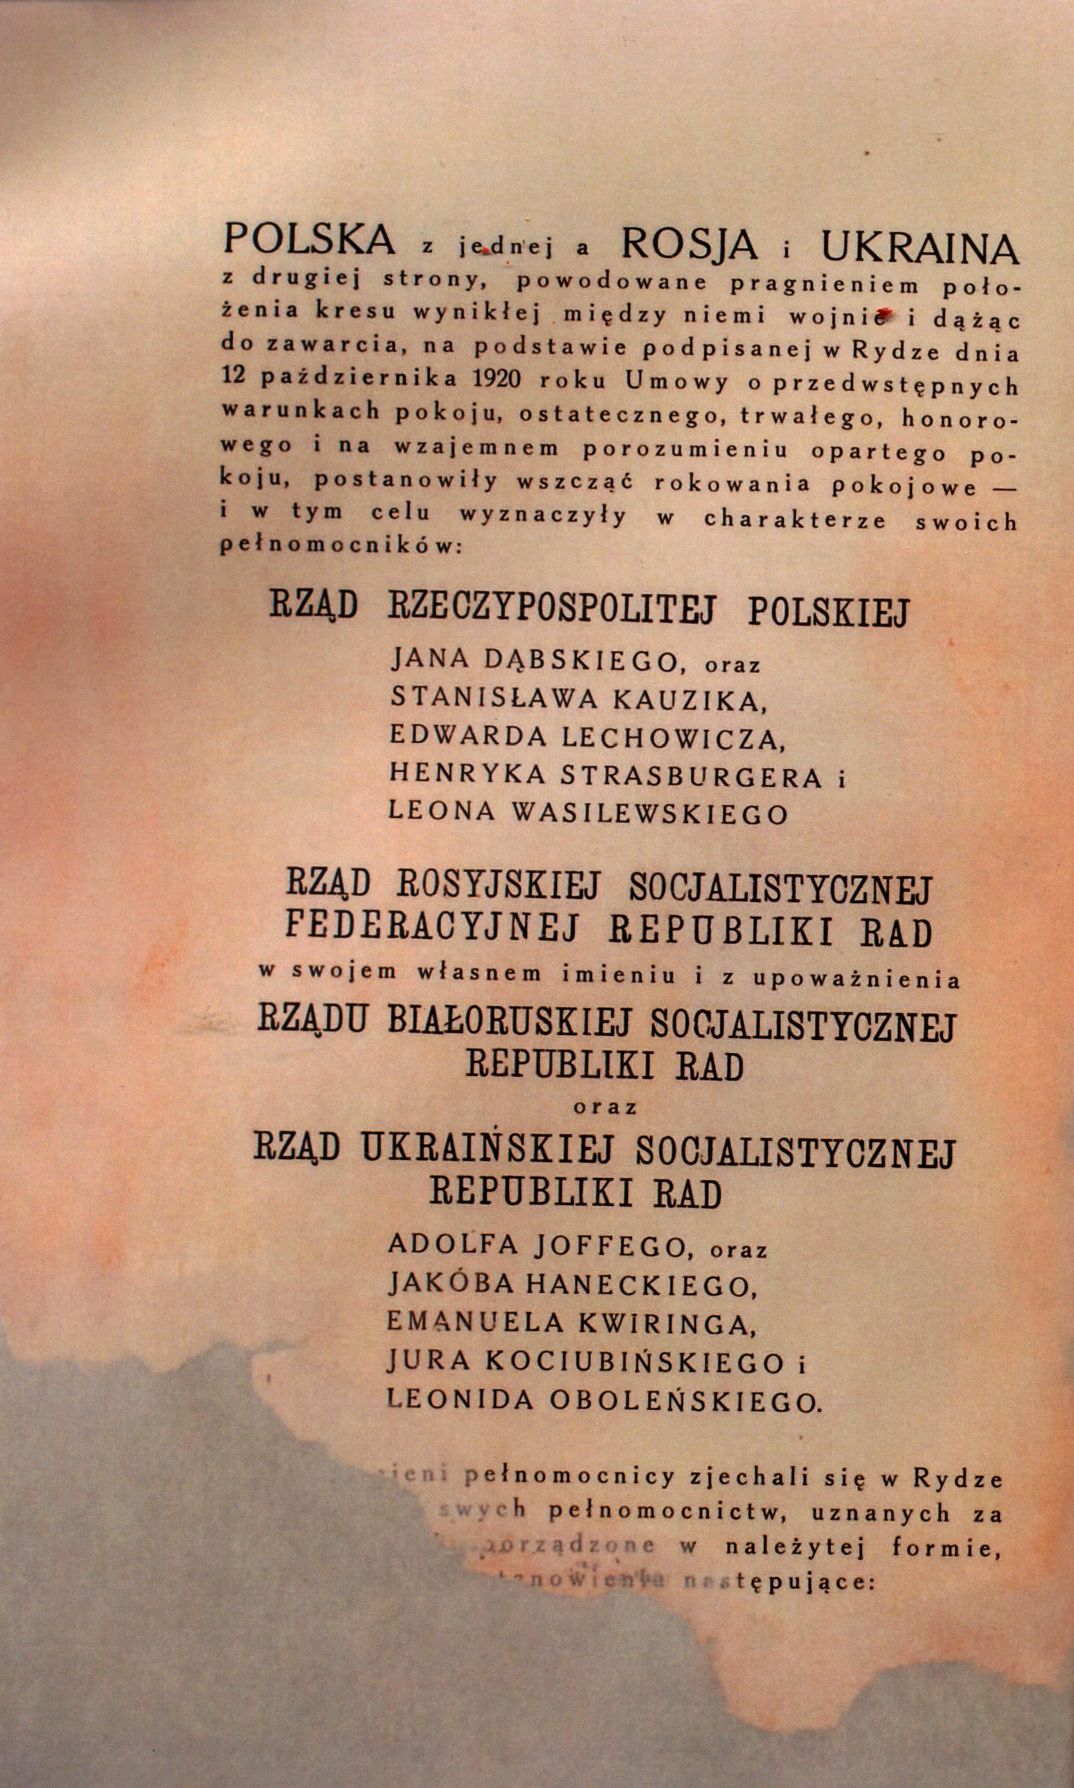 Traktat Pokoju między Polską a Rosją i Ukrainą podpisany w Rydze dnia 18 marca 1921 roku, s. 2, MSZ, sygn. 6739.